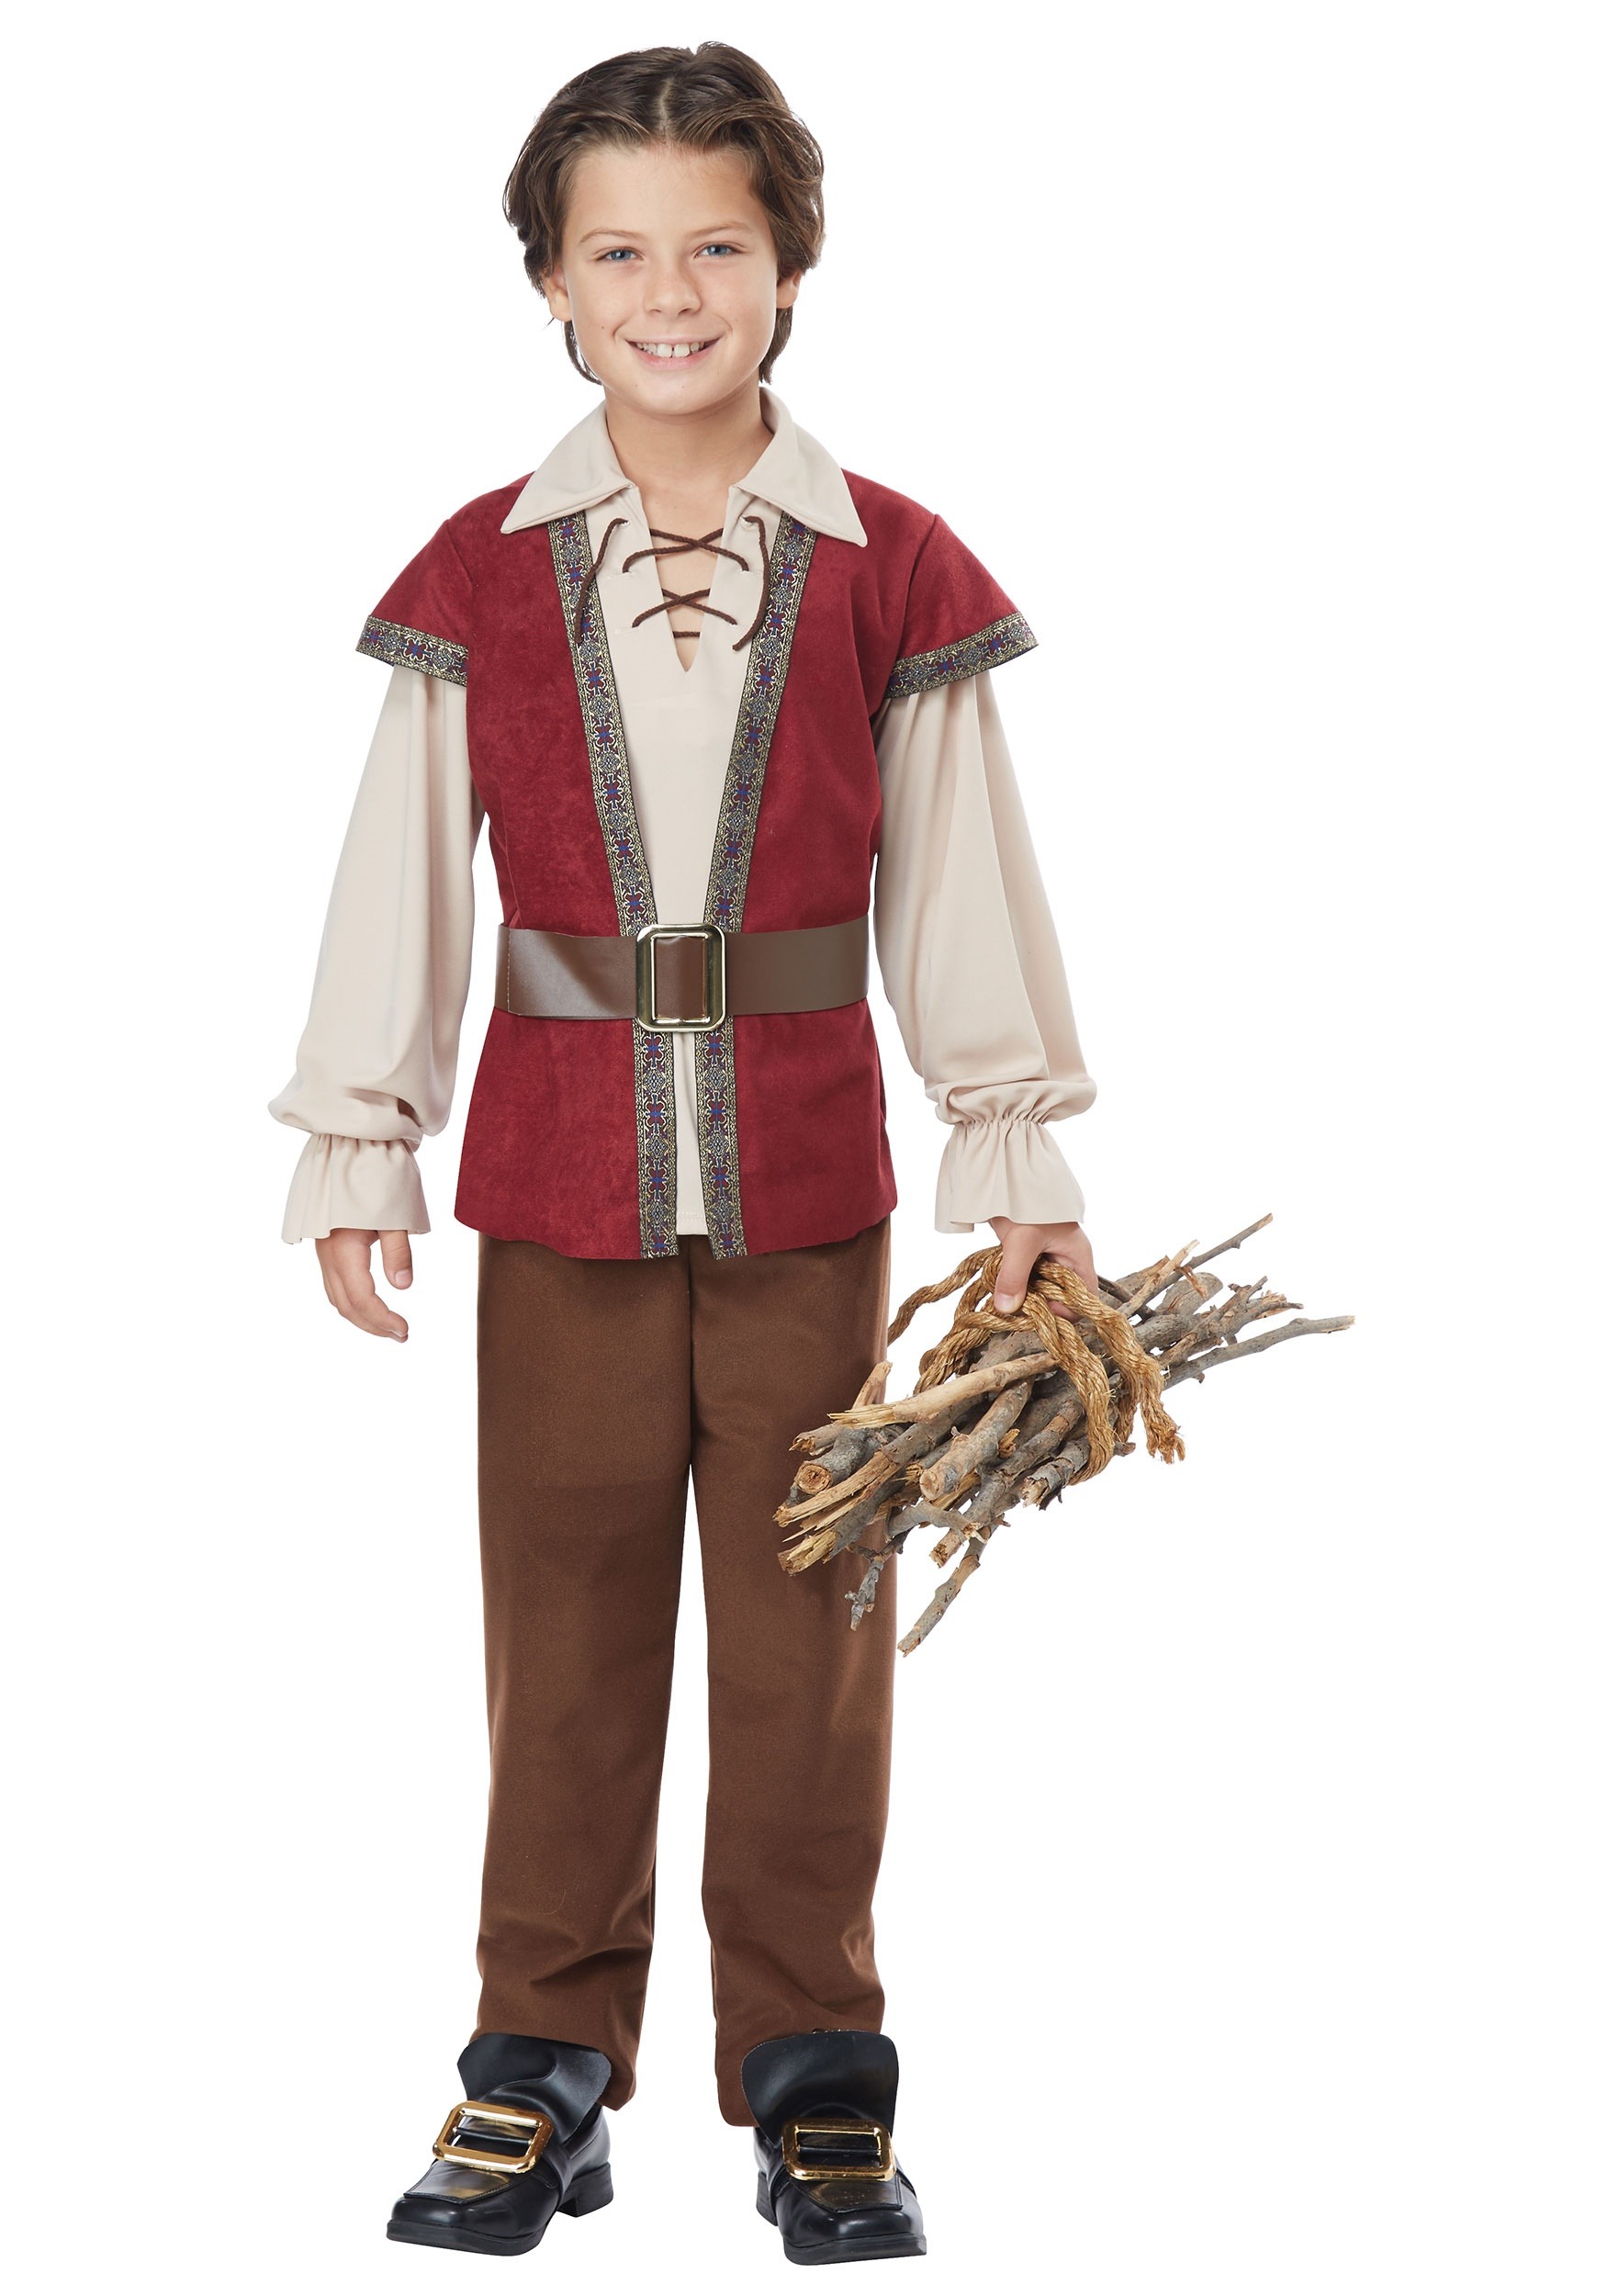 Child Renaissance Costume for a Boy